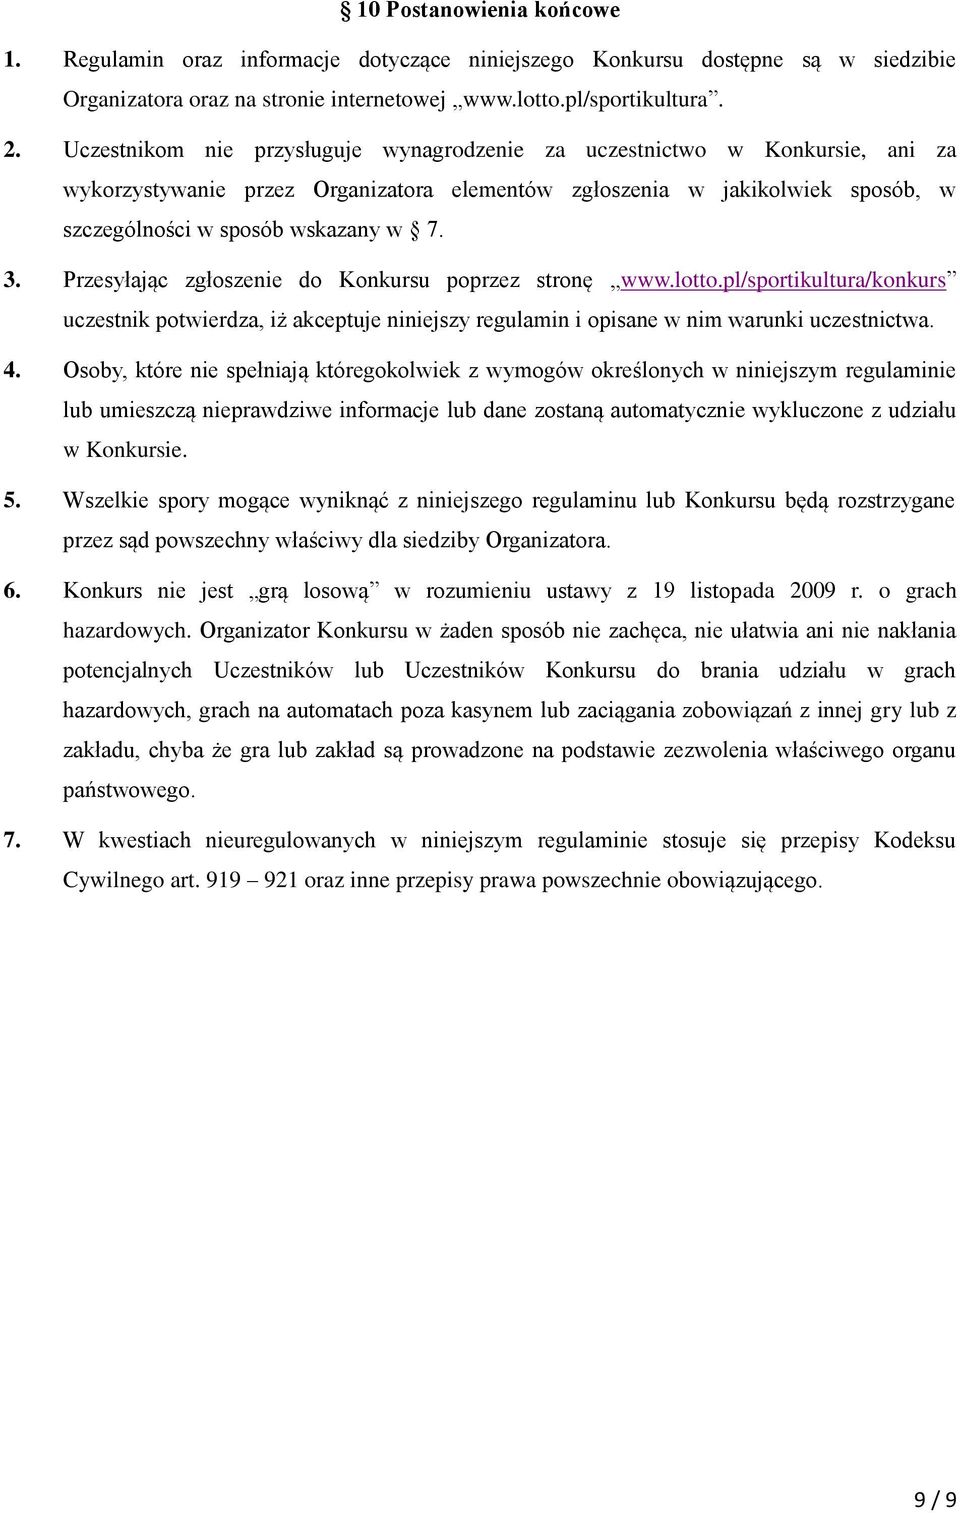 Przesyłając zgłoszenie do Konkursu poprzez stronę www.lotto.pl/sportikultura/konkurs uczestnik potwierdza, iż akceptuje niniejszy regulamin i opisane w nim warunki uczestnictwa. 4.